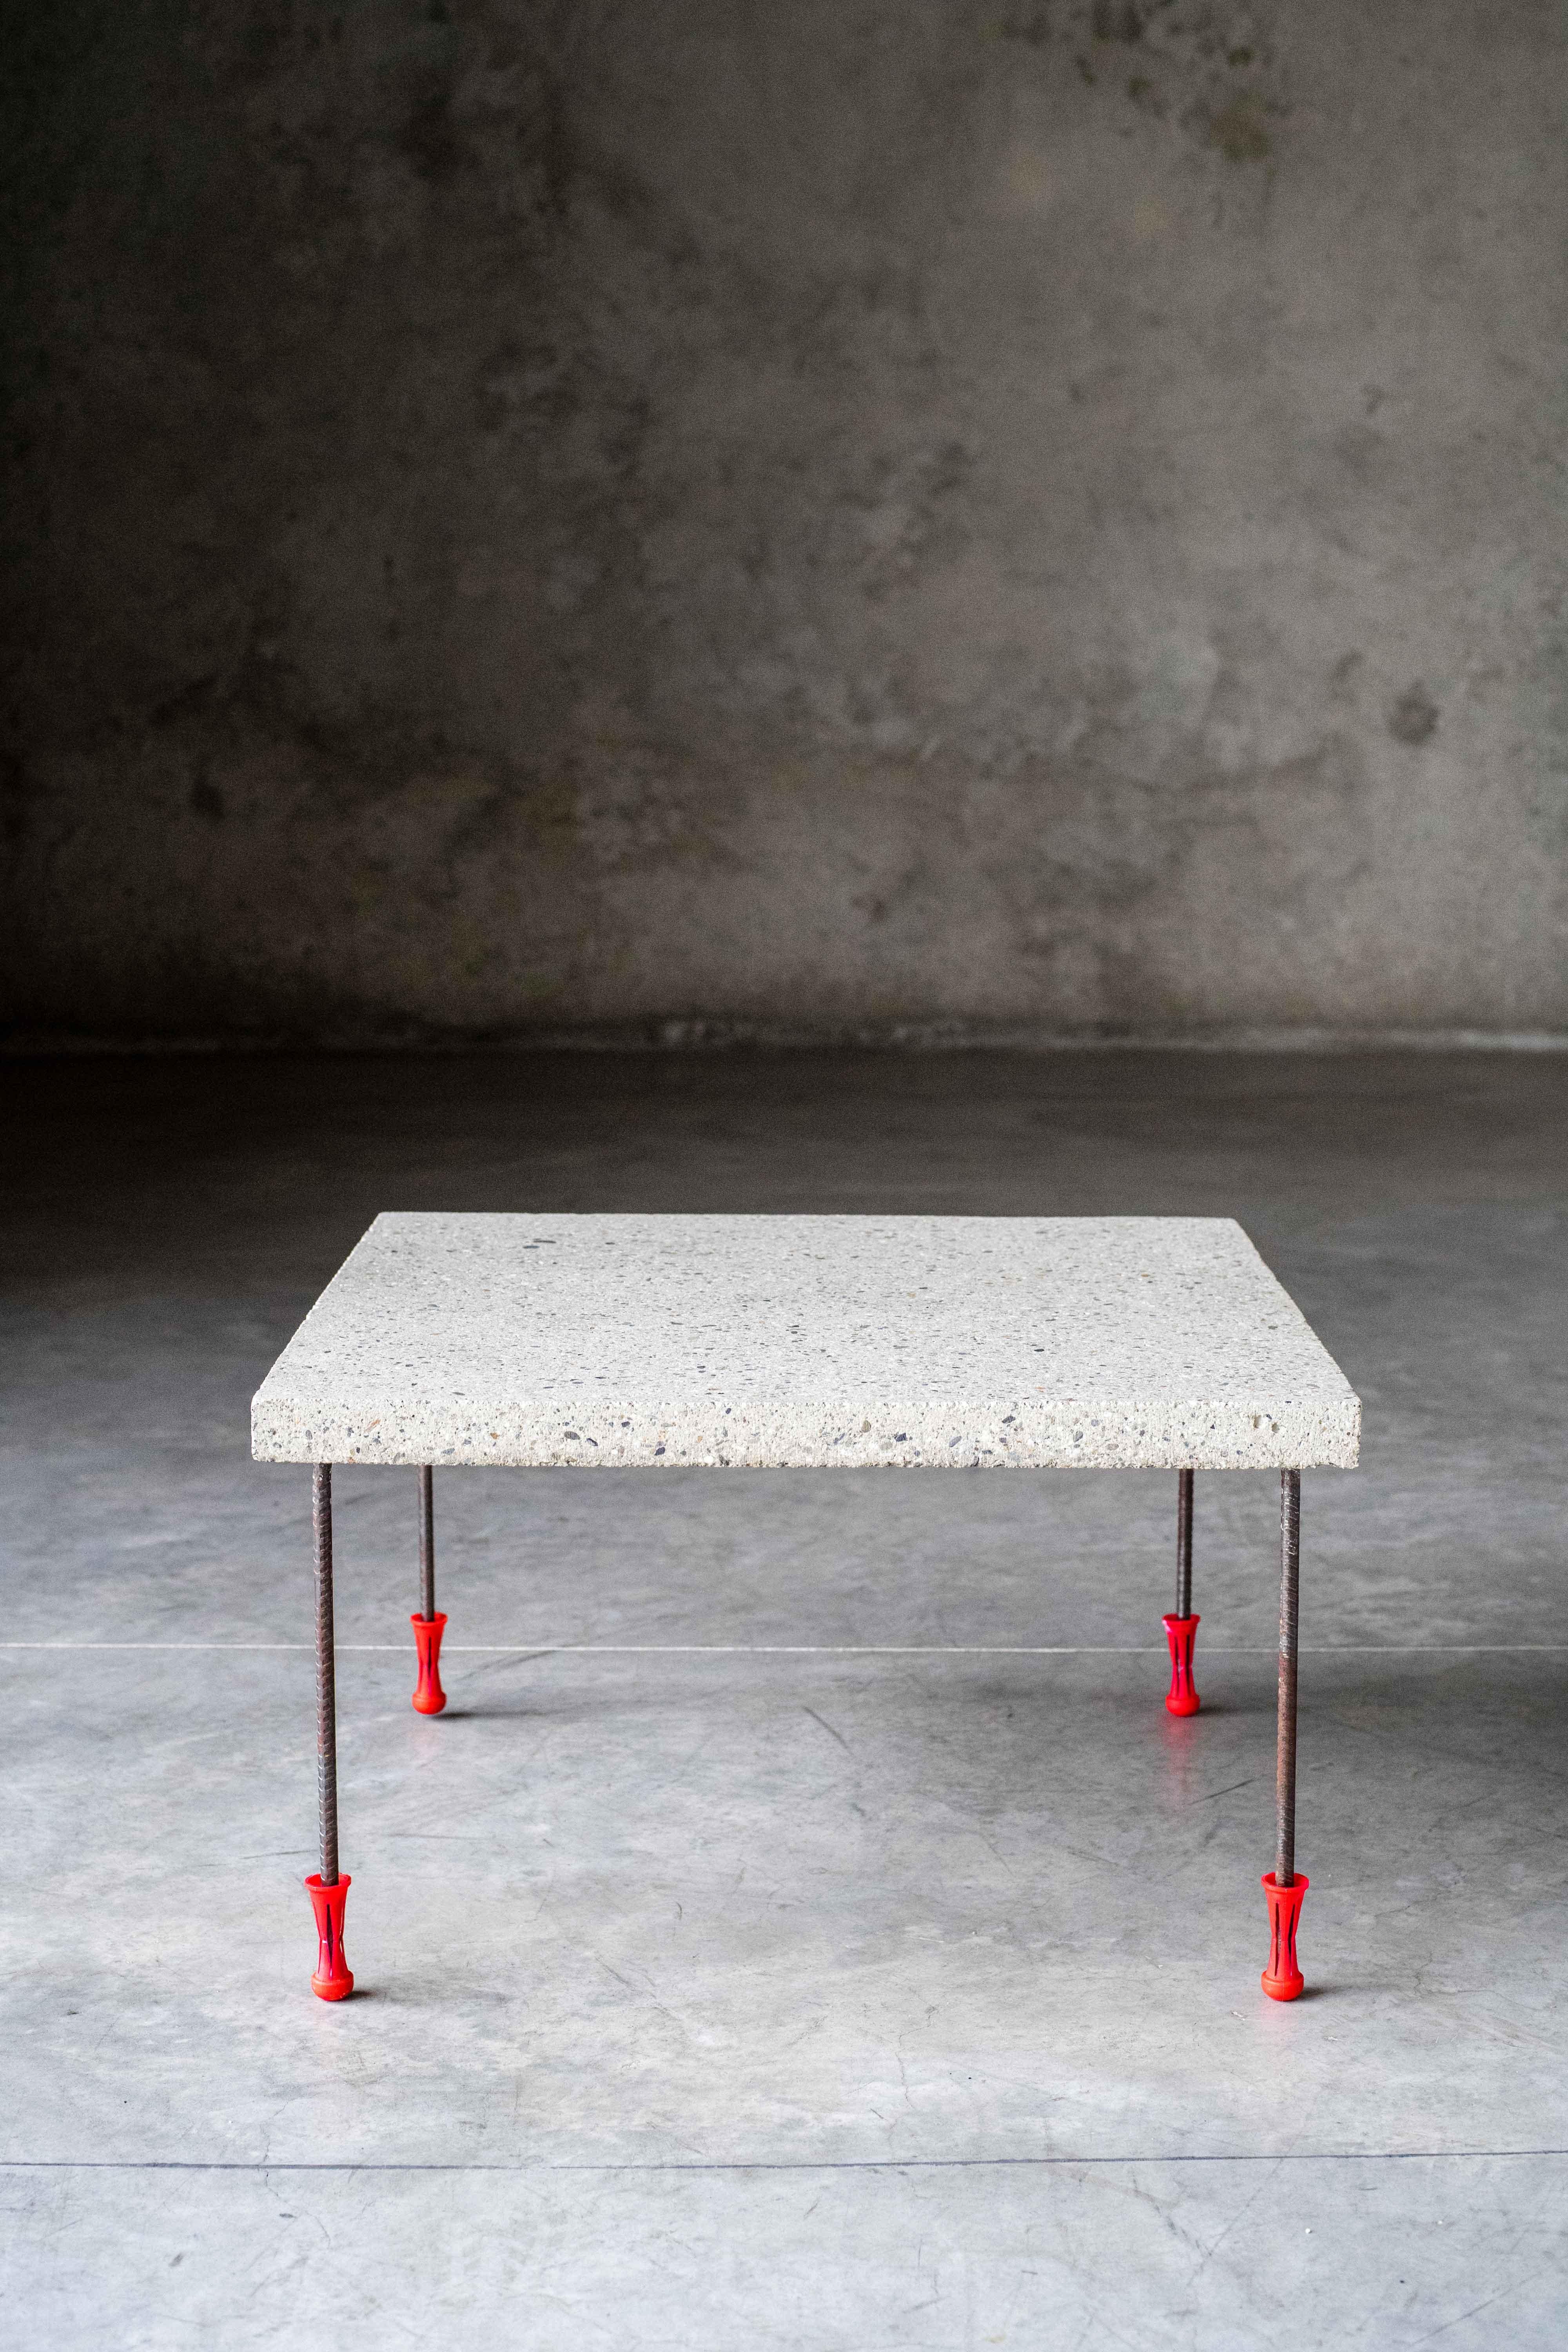 Mason's Tisch von MOB 
Limitierte Auflage von 5 Stück + 1 Prototyp
Designer: BAST (Frankreich)
Abmessungen: H 75 x T 60 x B 60 cm
MATERIAL: Beton

Der Maurer-Tisch ist so konzipiert, dass er von jedem Maurer gebaut werden kann. Es verwendet einfache